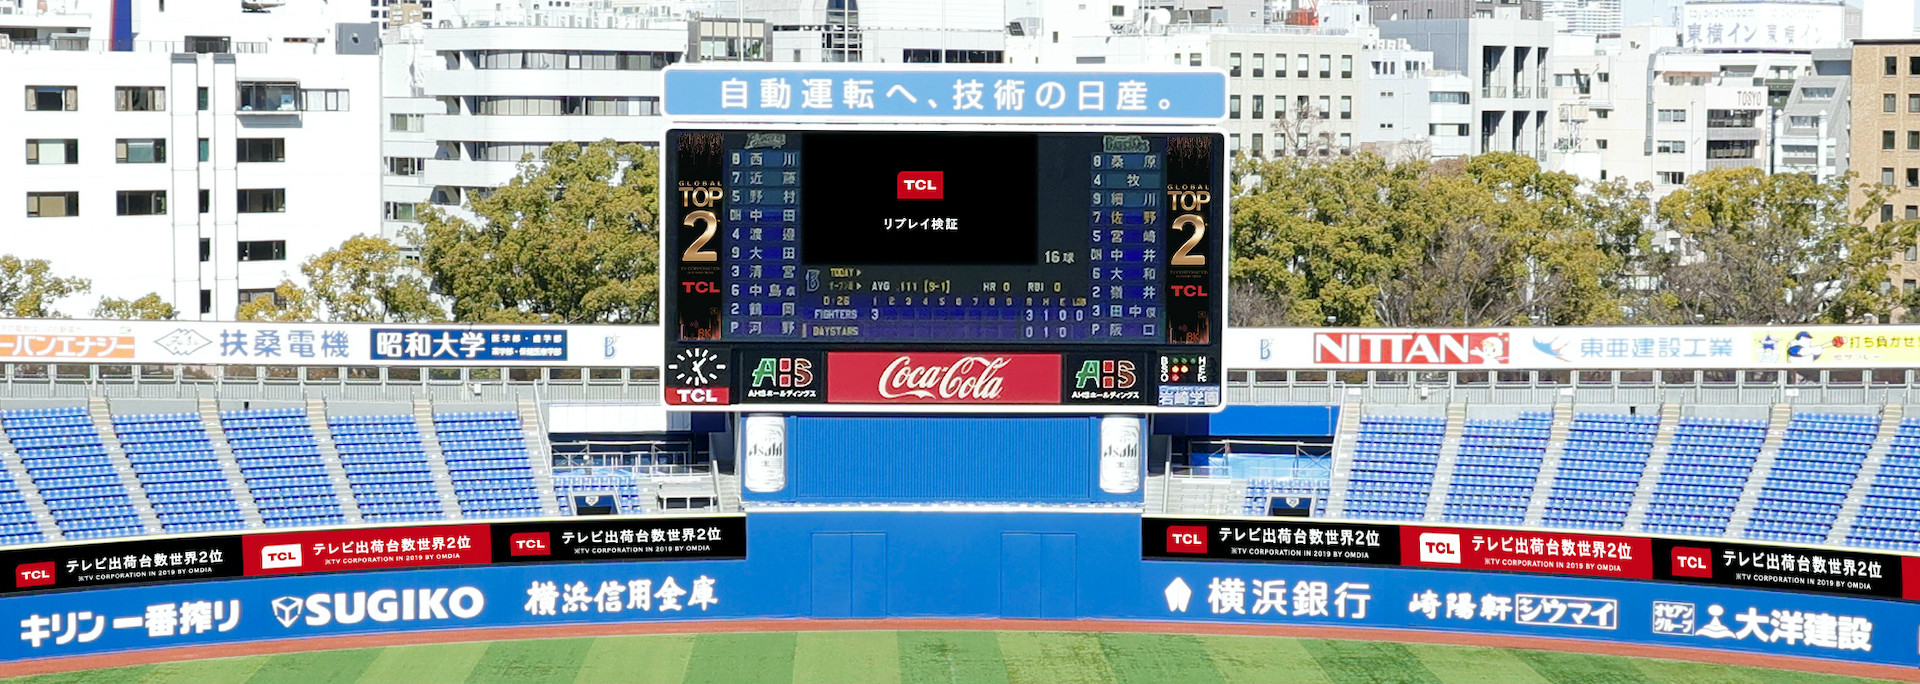 南宫ng·28 replay verification ads during the baseball game